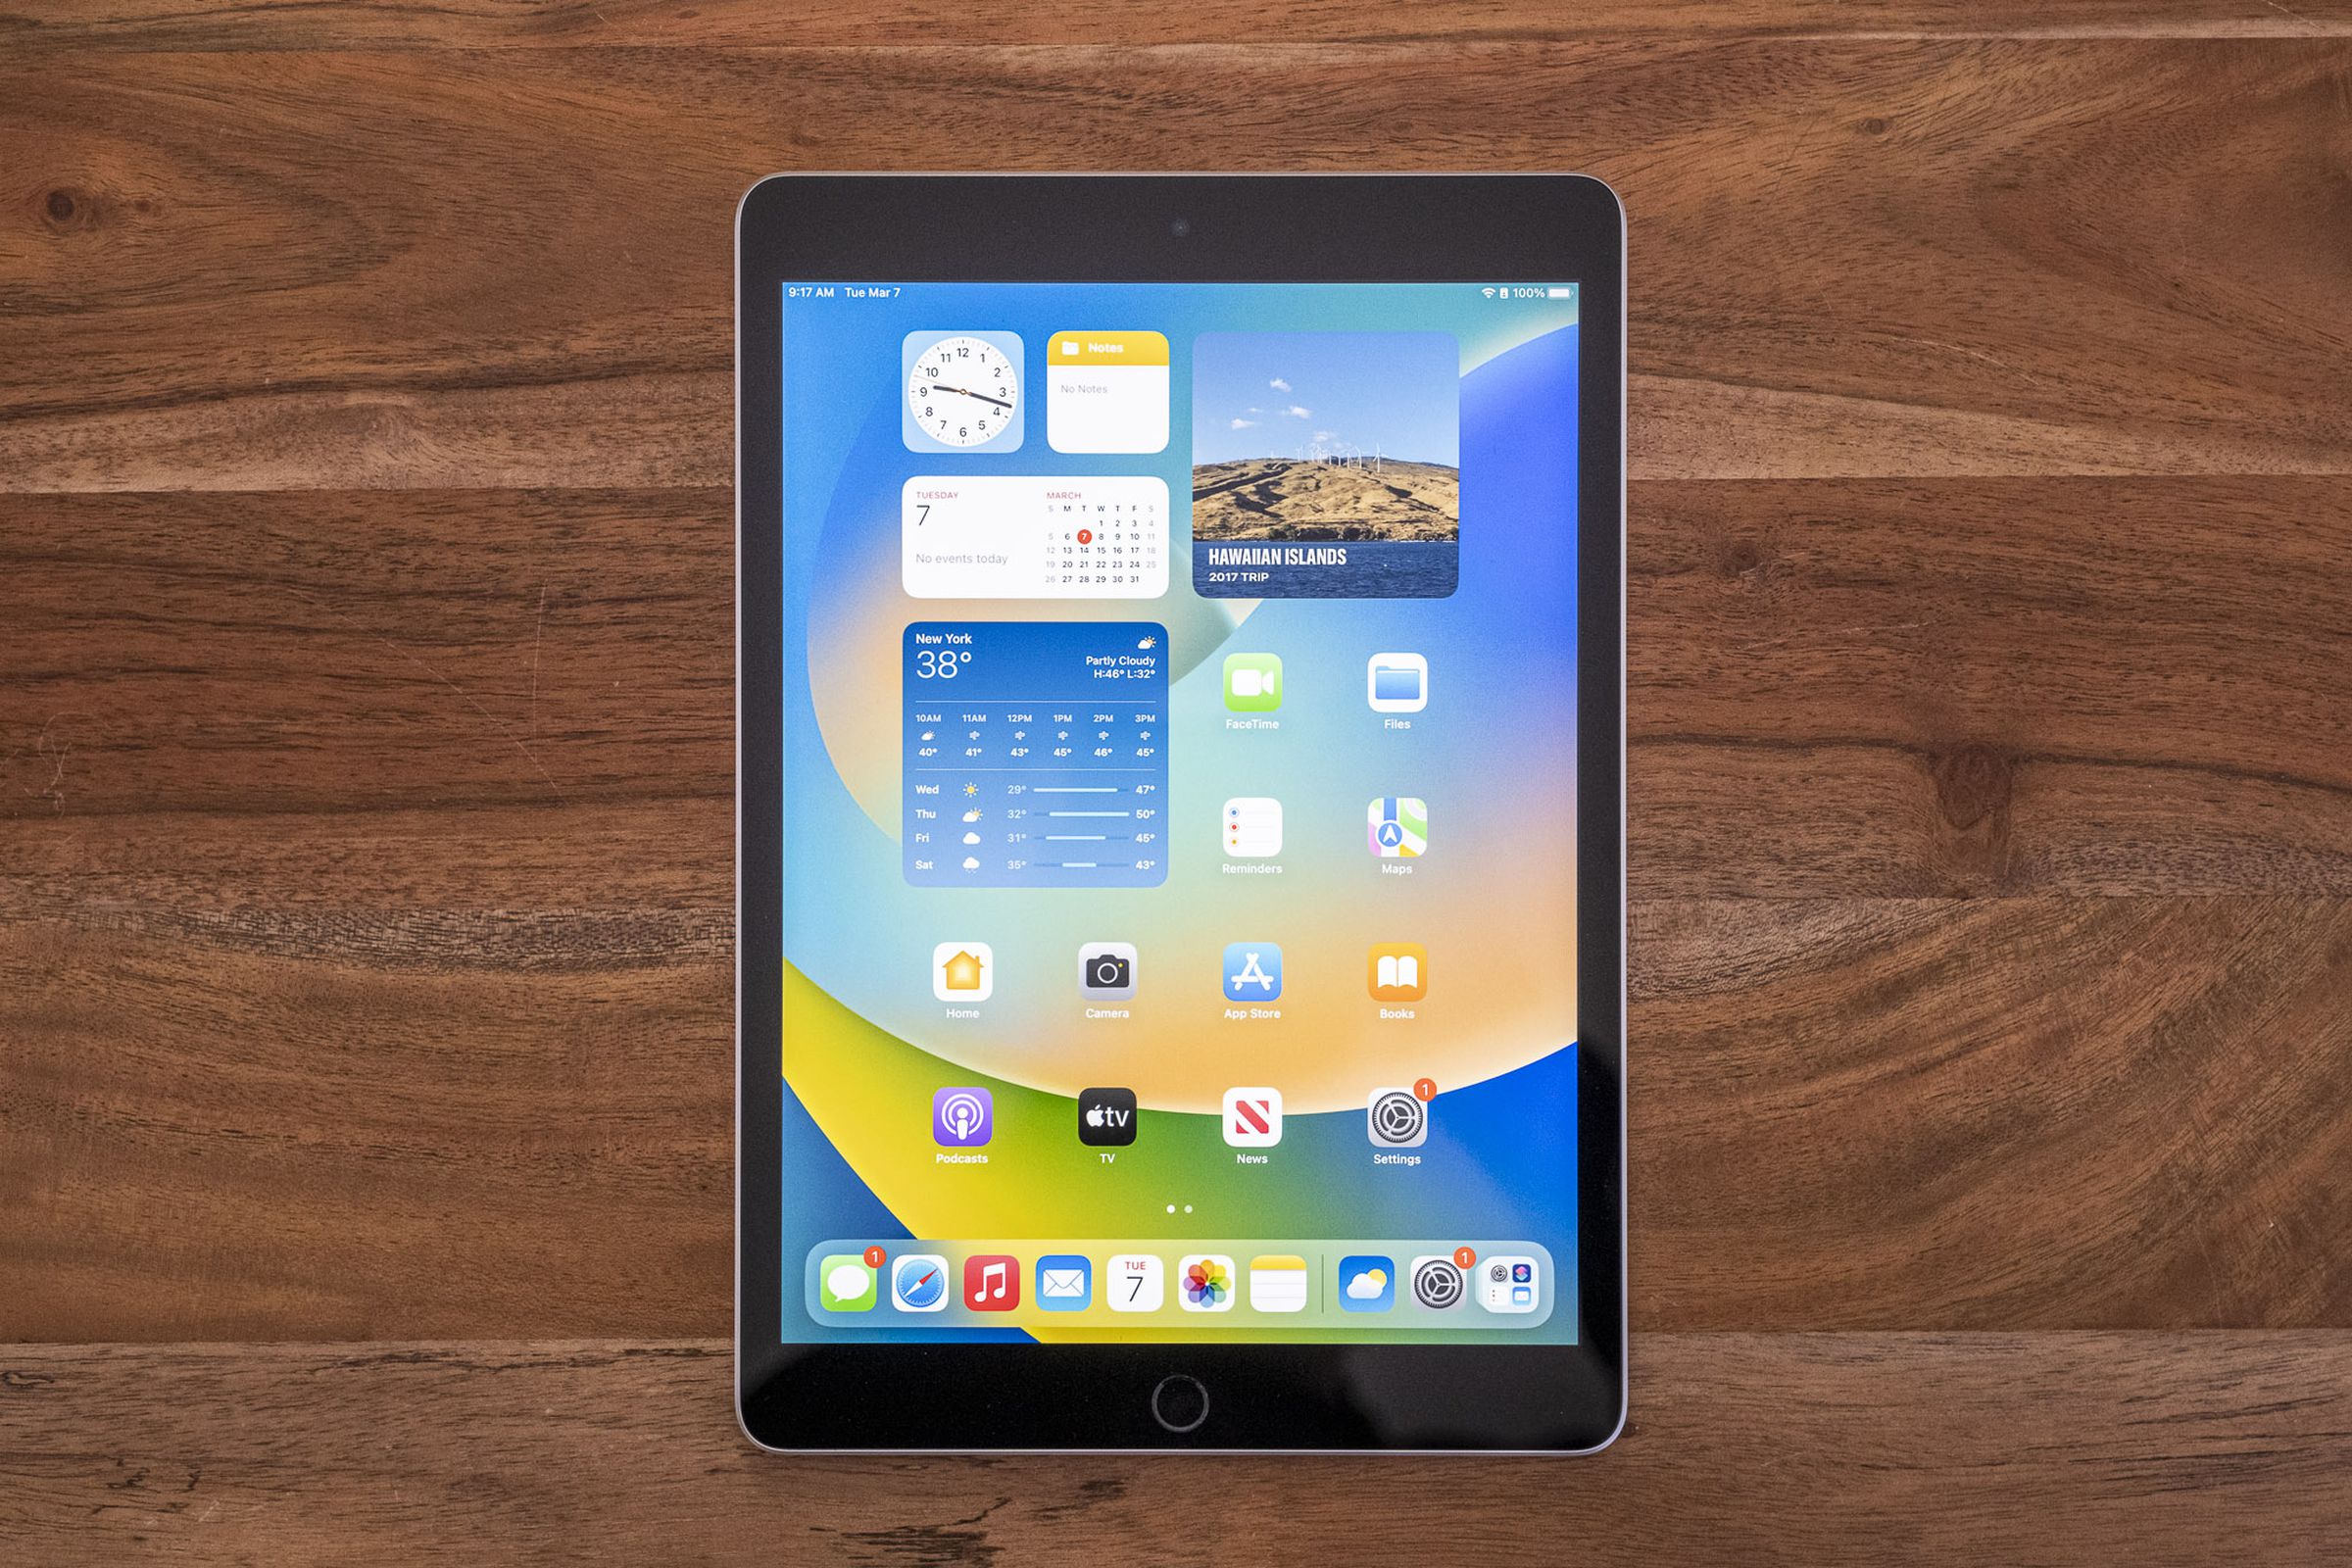 جهاز iPad من الجيل التاسع على طاولة خشبية يُنظر إليه من أعلى إلى أسفل